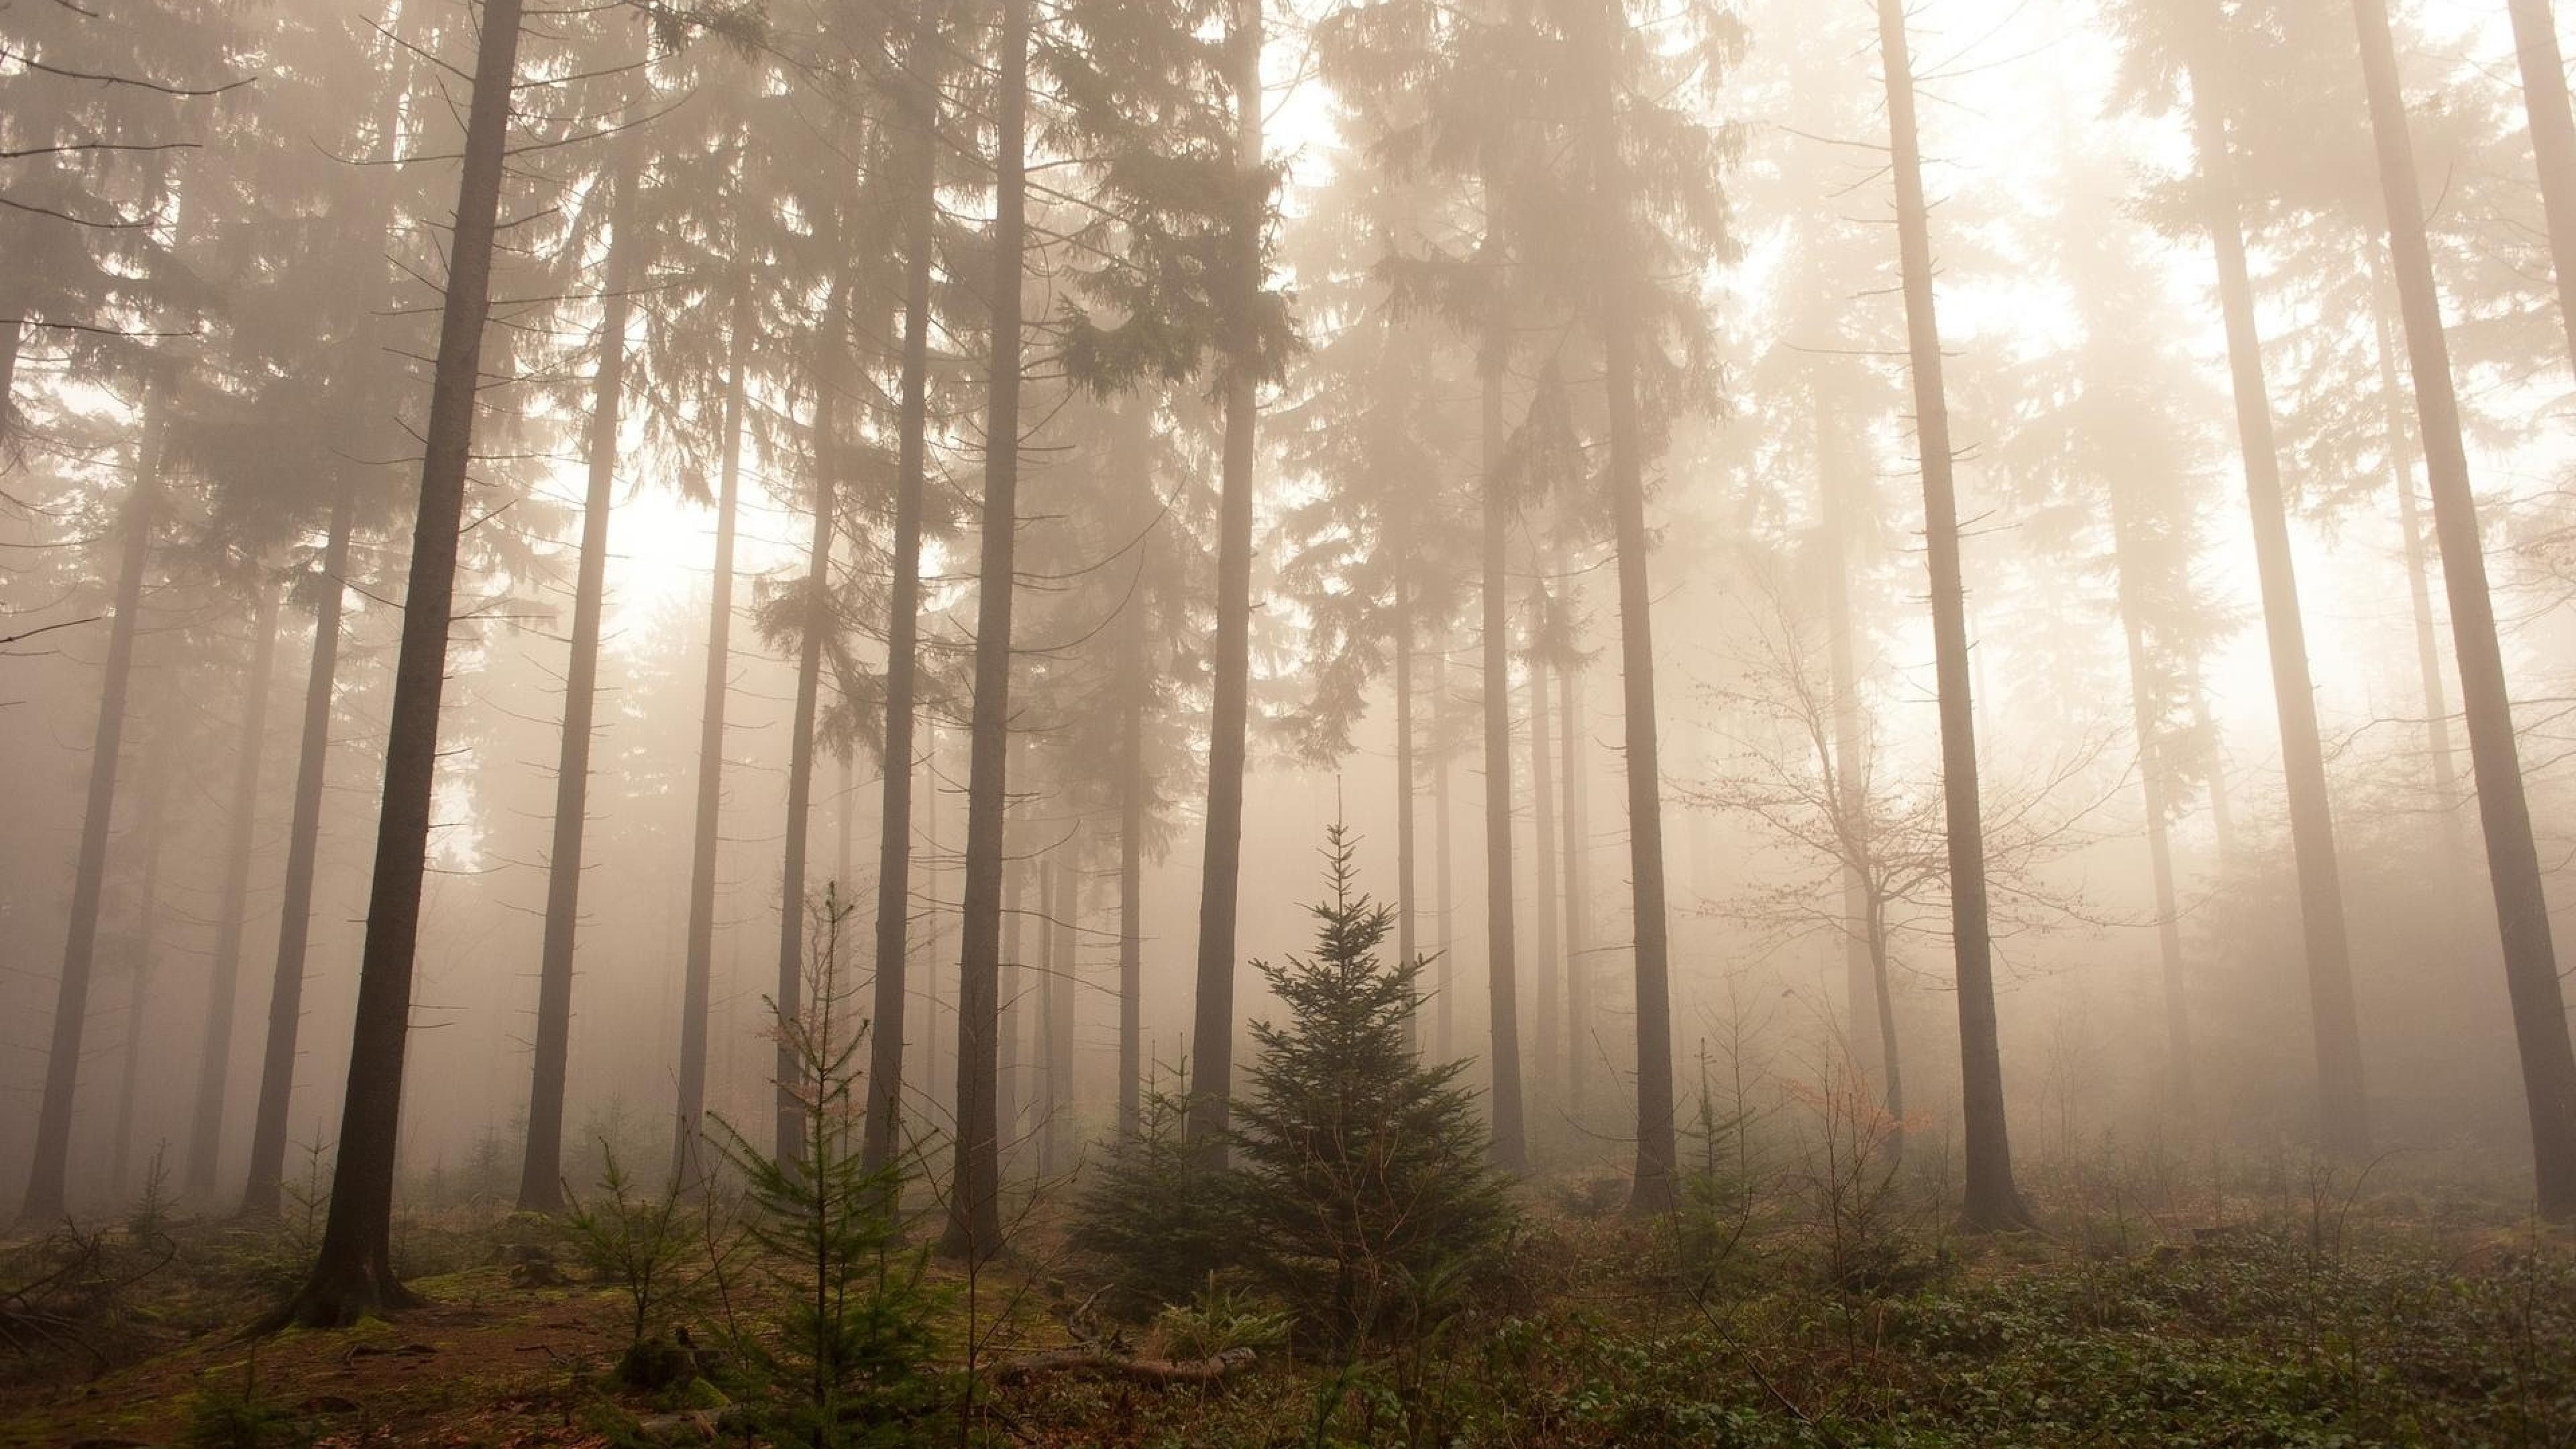  Wald Hintergrundbild 3840x2160. Kostenlose Hintergrundbilder Tagsüber Grüne Bäume im Wald, Bilder Für Ihren Desktop Und Fotos